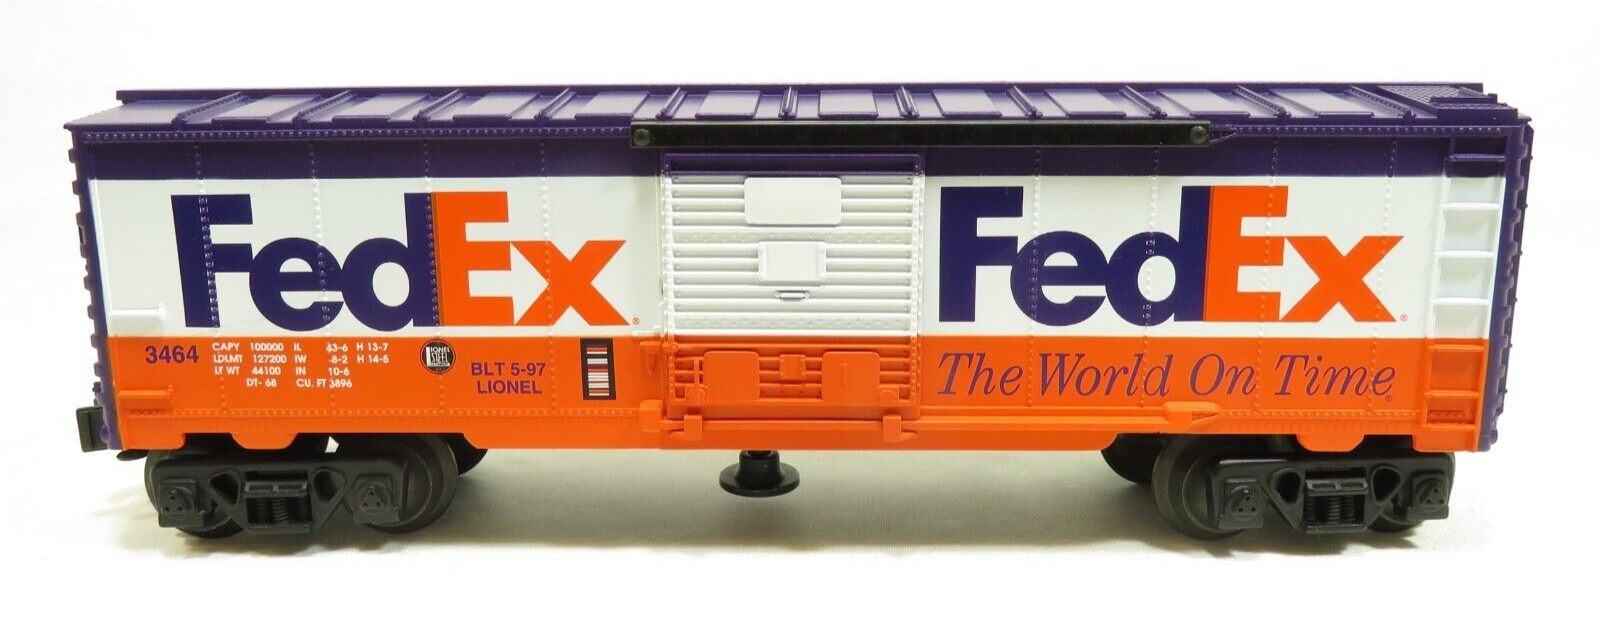 Lionel 6-19835 3464X Fedex Animated Boxcar NIB